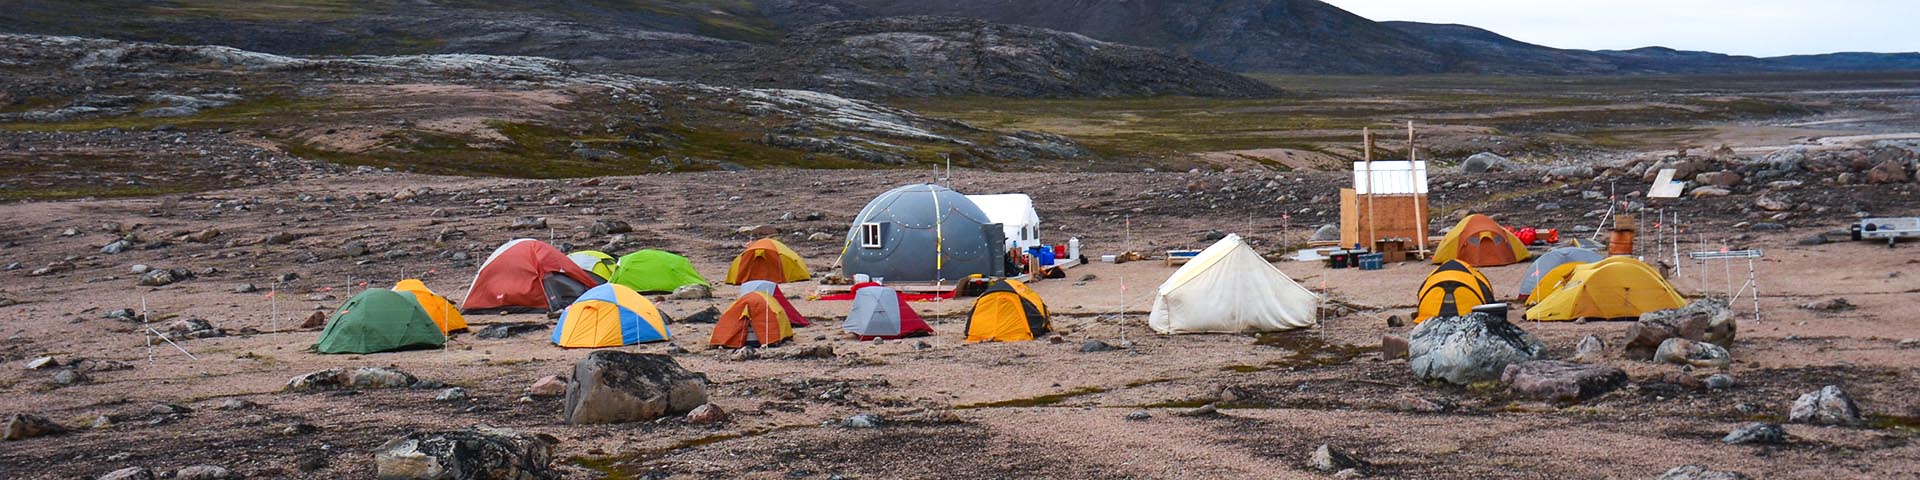 Un groupe de tentes et d'abris entourés de paysages de toundra. 